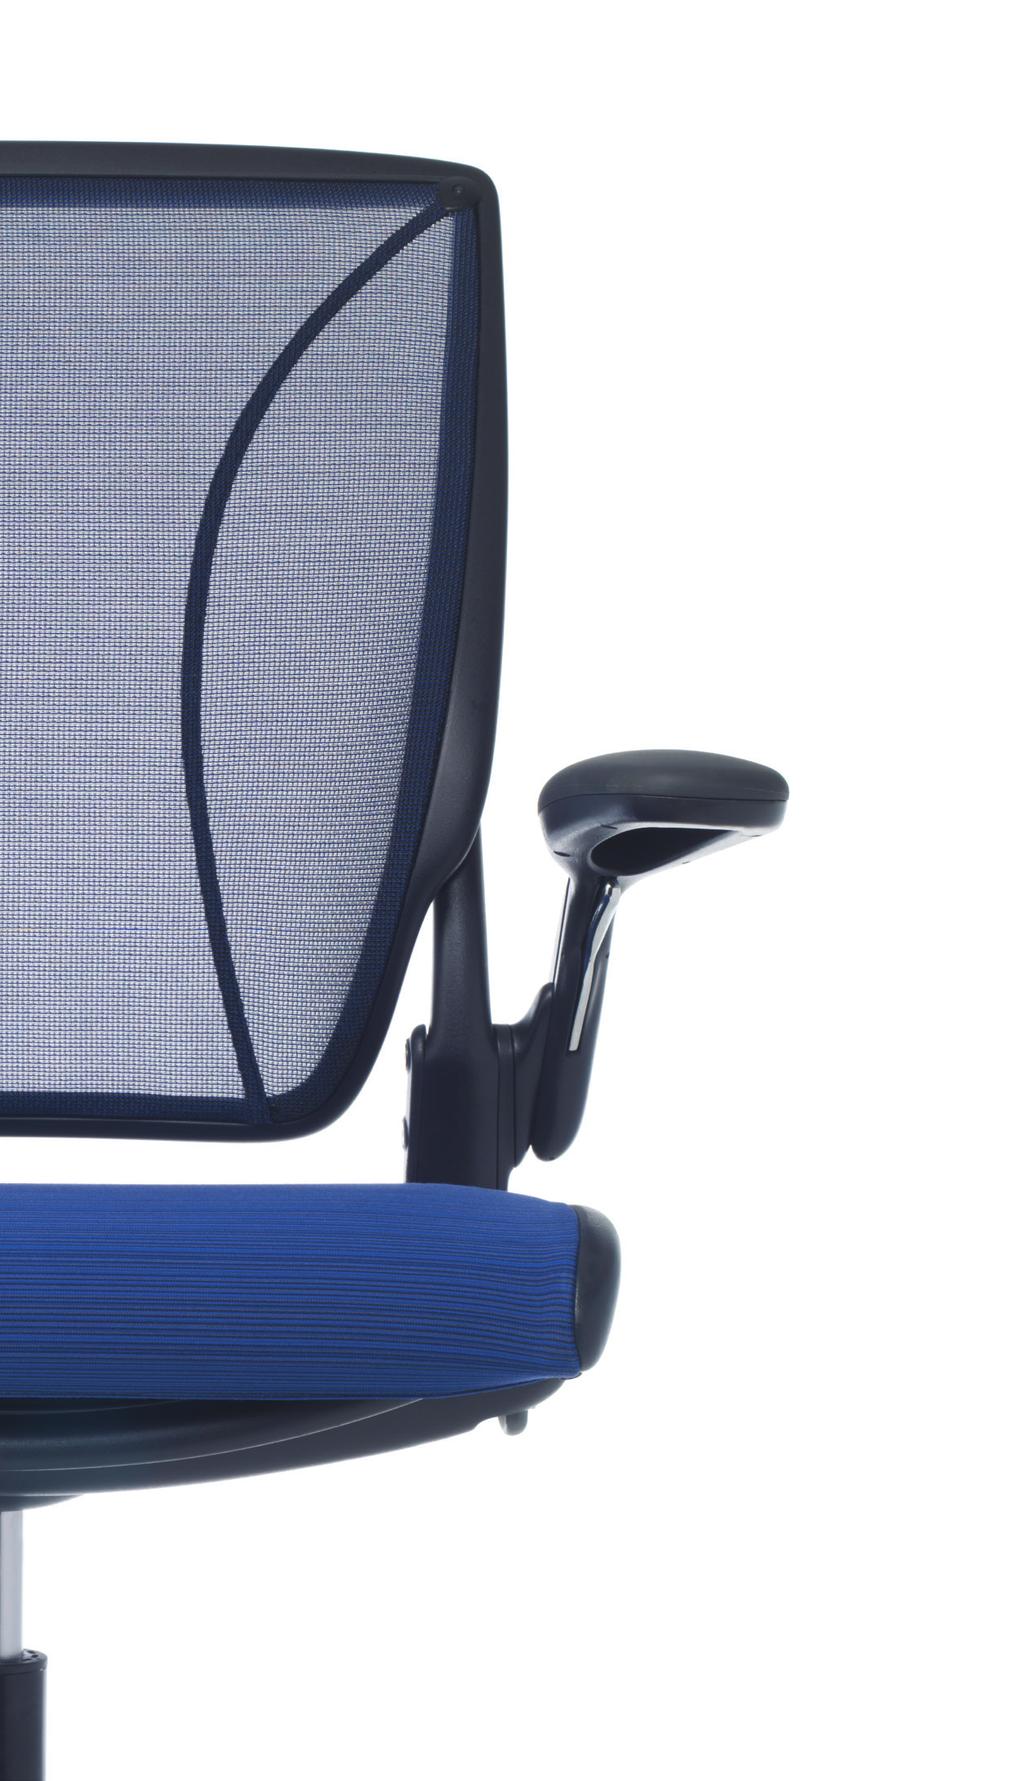 Simplicidad: para el Usuario La silla Diffrient World tiene solo dos ajustes manuales uno para la altura del asiento y otro para la profundidad del asiento. Todos los demás ajustes son automáticos.